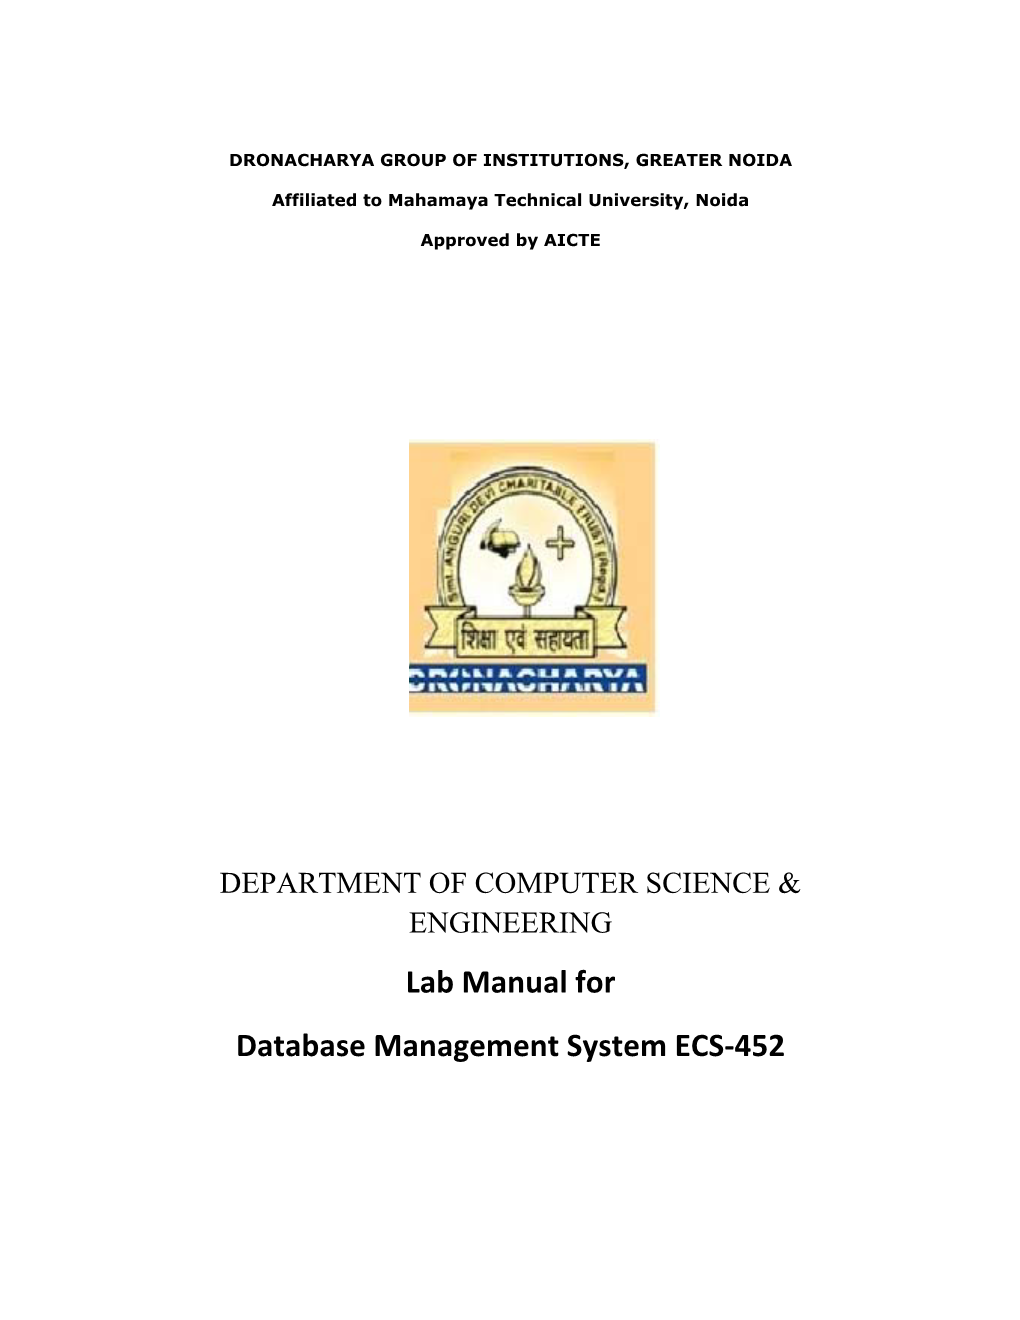 Lab Manual for Database Management System ECS-452